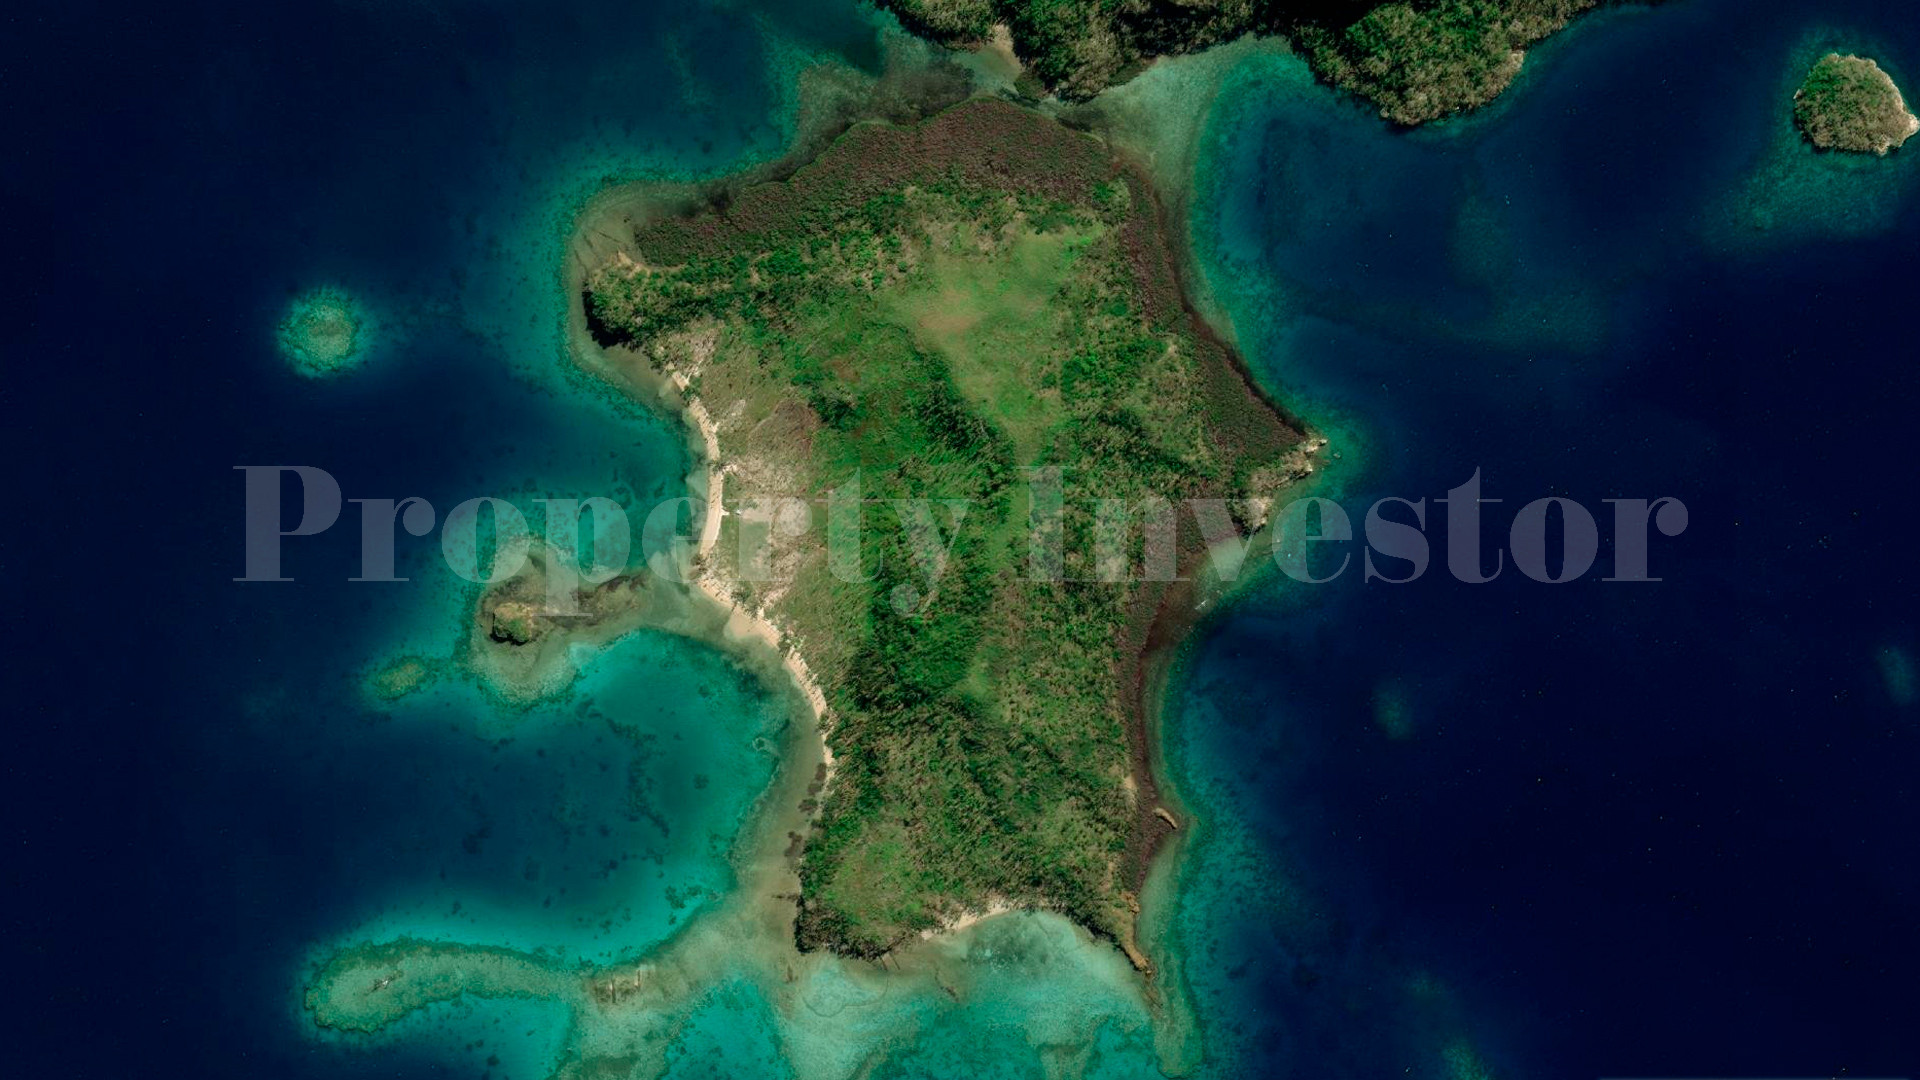 Pristine 41 Hectare Private Tropical Island for Sale in Fiji